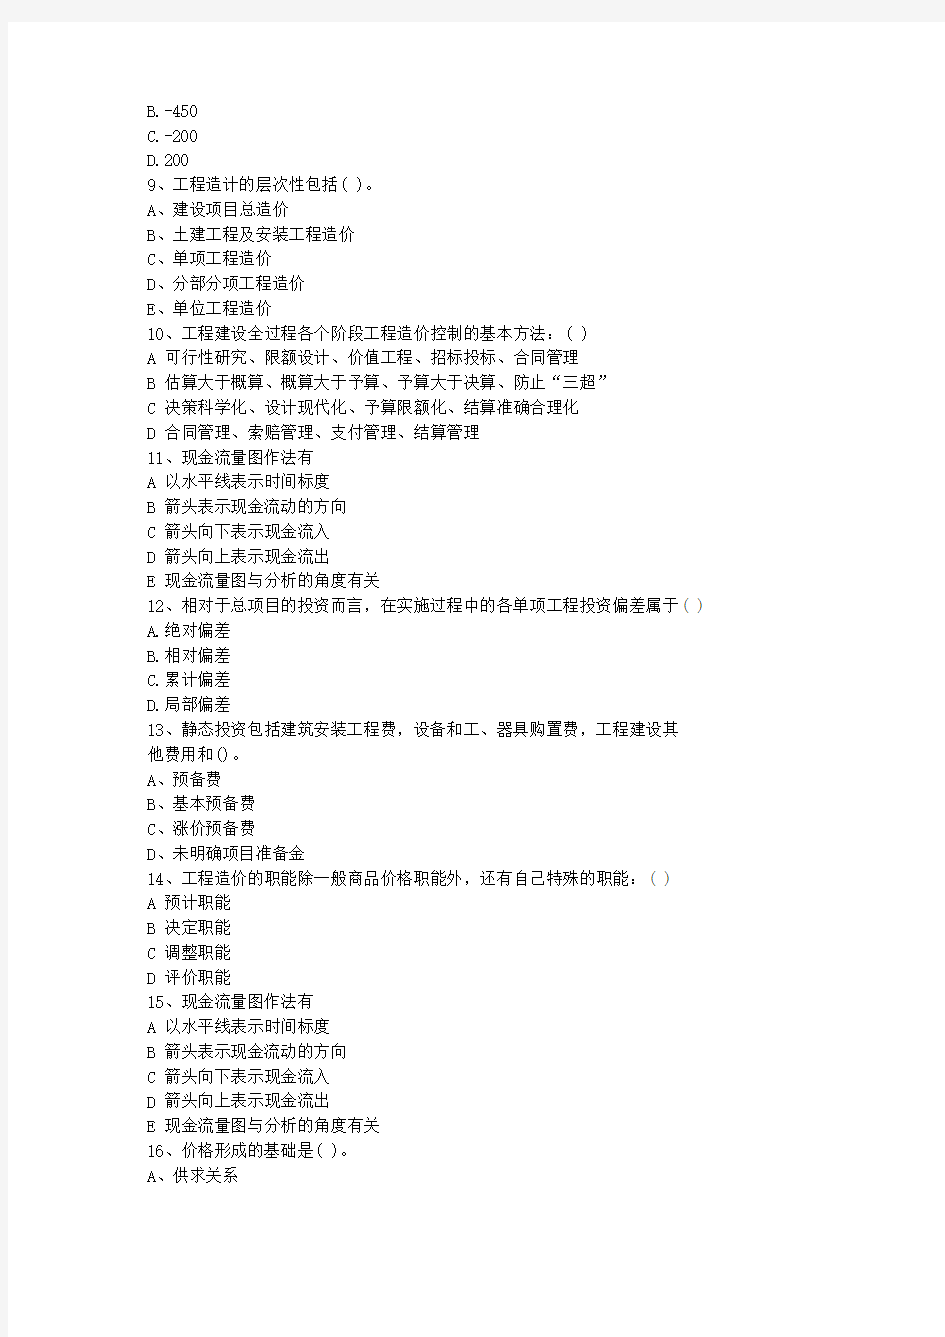 2013贵州省土建造价员考试真题(含答案)考试答题技巧